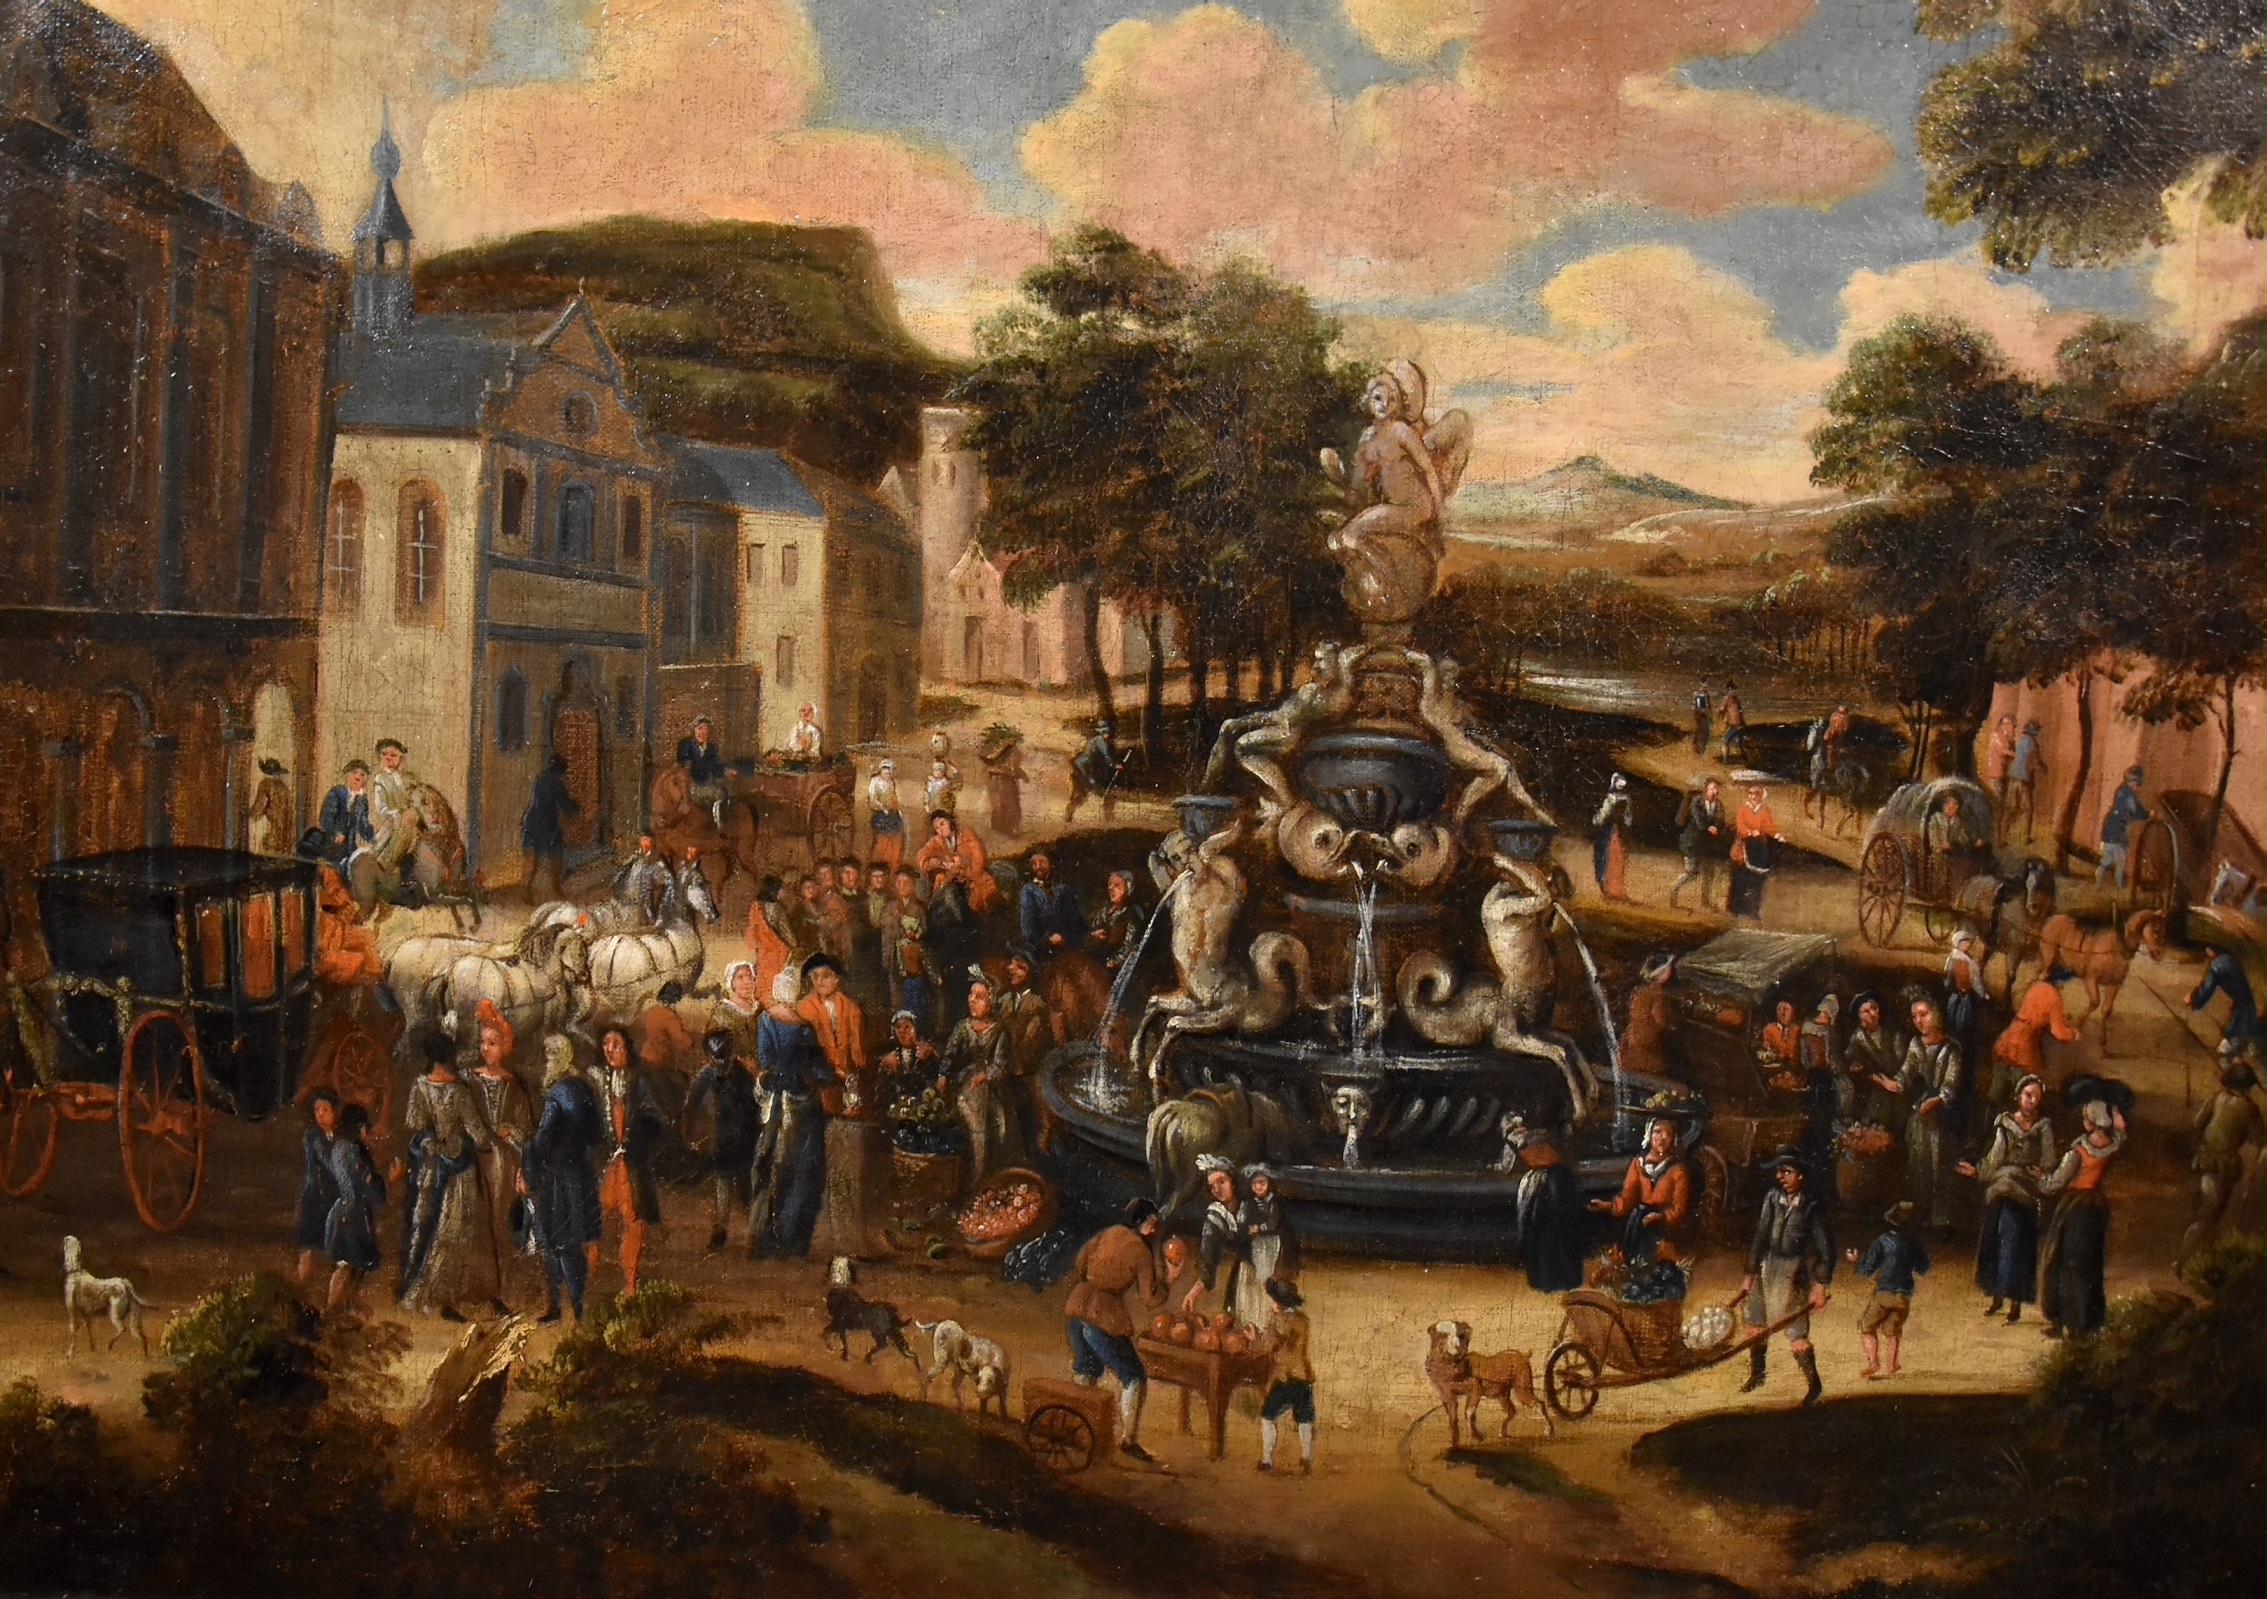 Landschaft, Dorfmarkt, Gemälde Öl auf Leinwand, Alter Meister, flämische Kunst, 18. Jahrhundert – Painting von Circle of Pieter van Bredael (Antwerp 1629 - 1719)